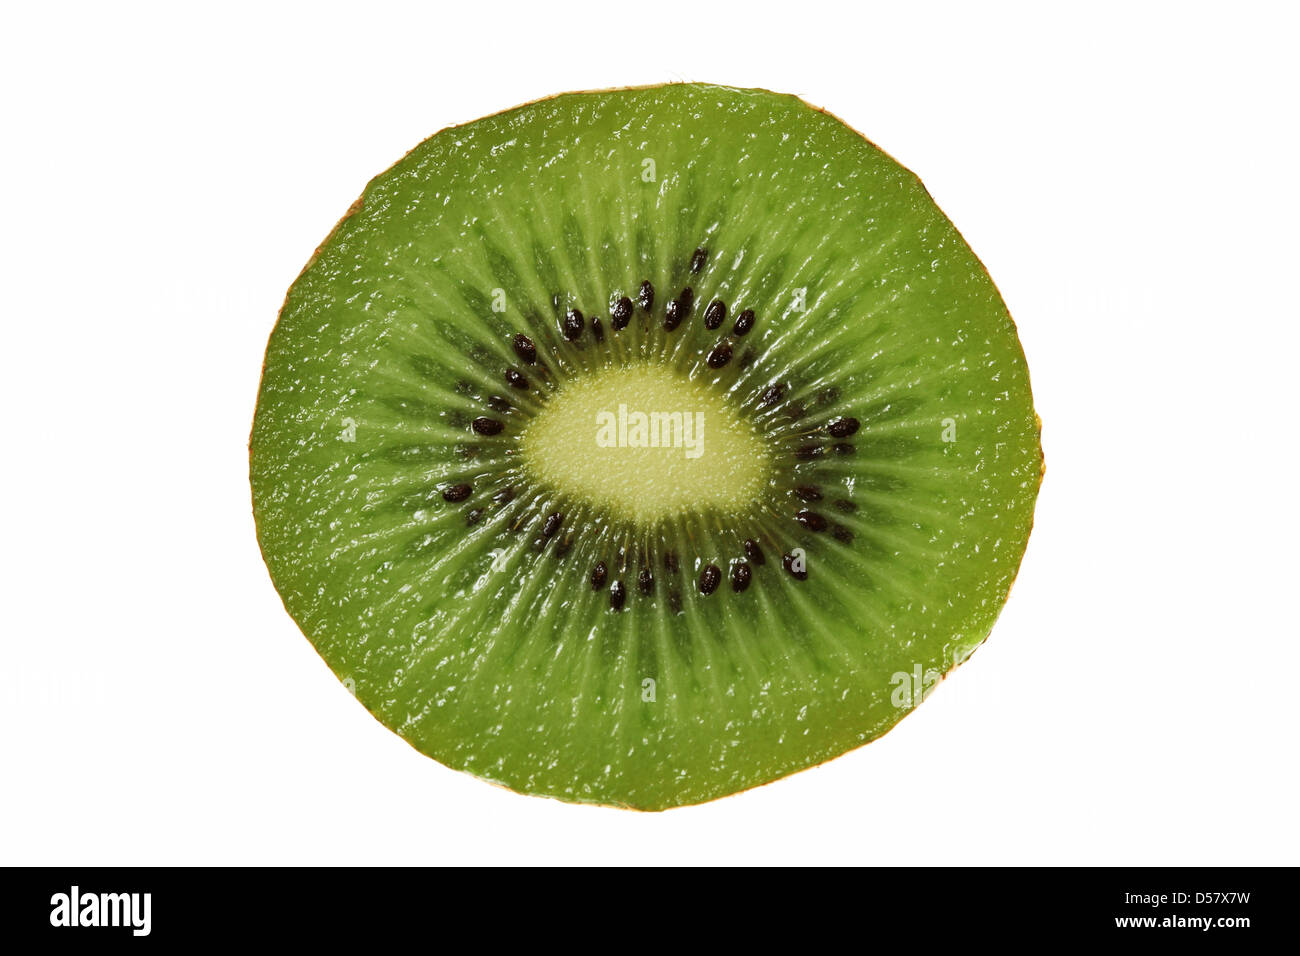 Sezione trasversale di kiwi-frutta Foto Stock